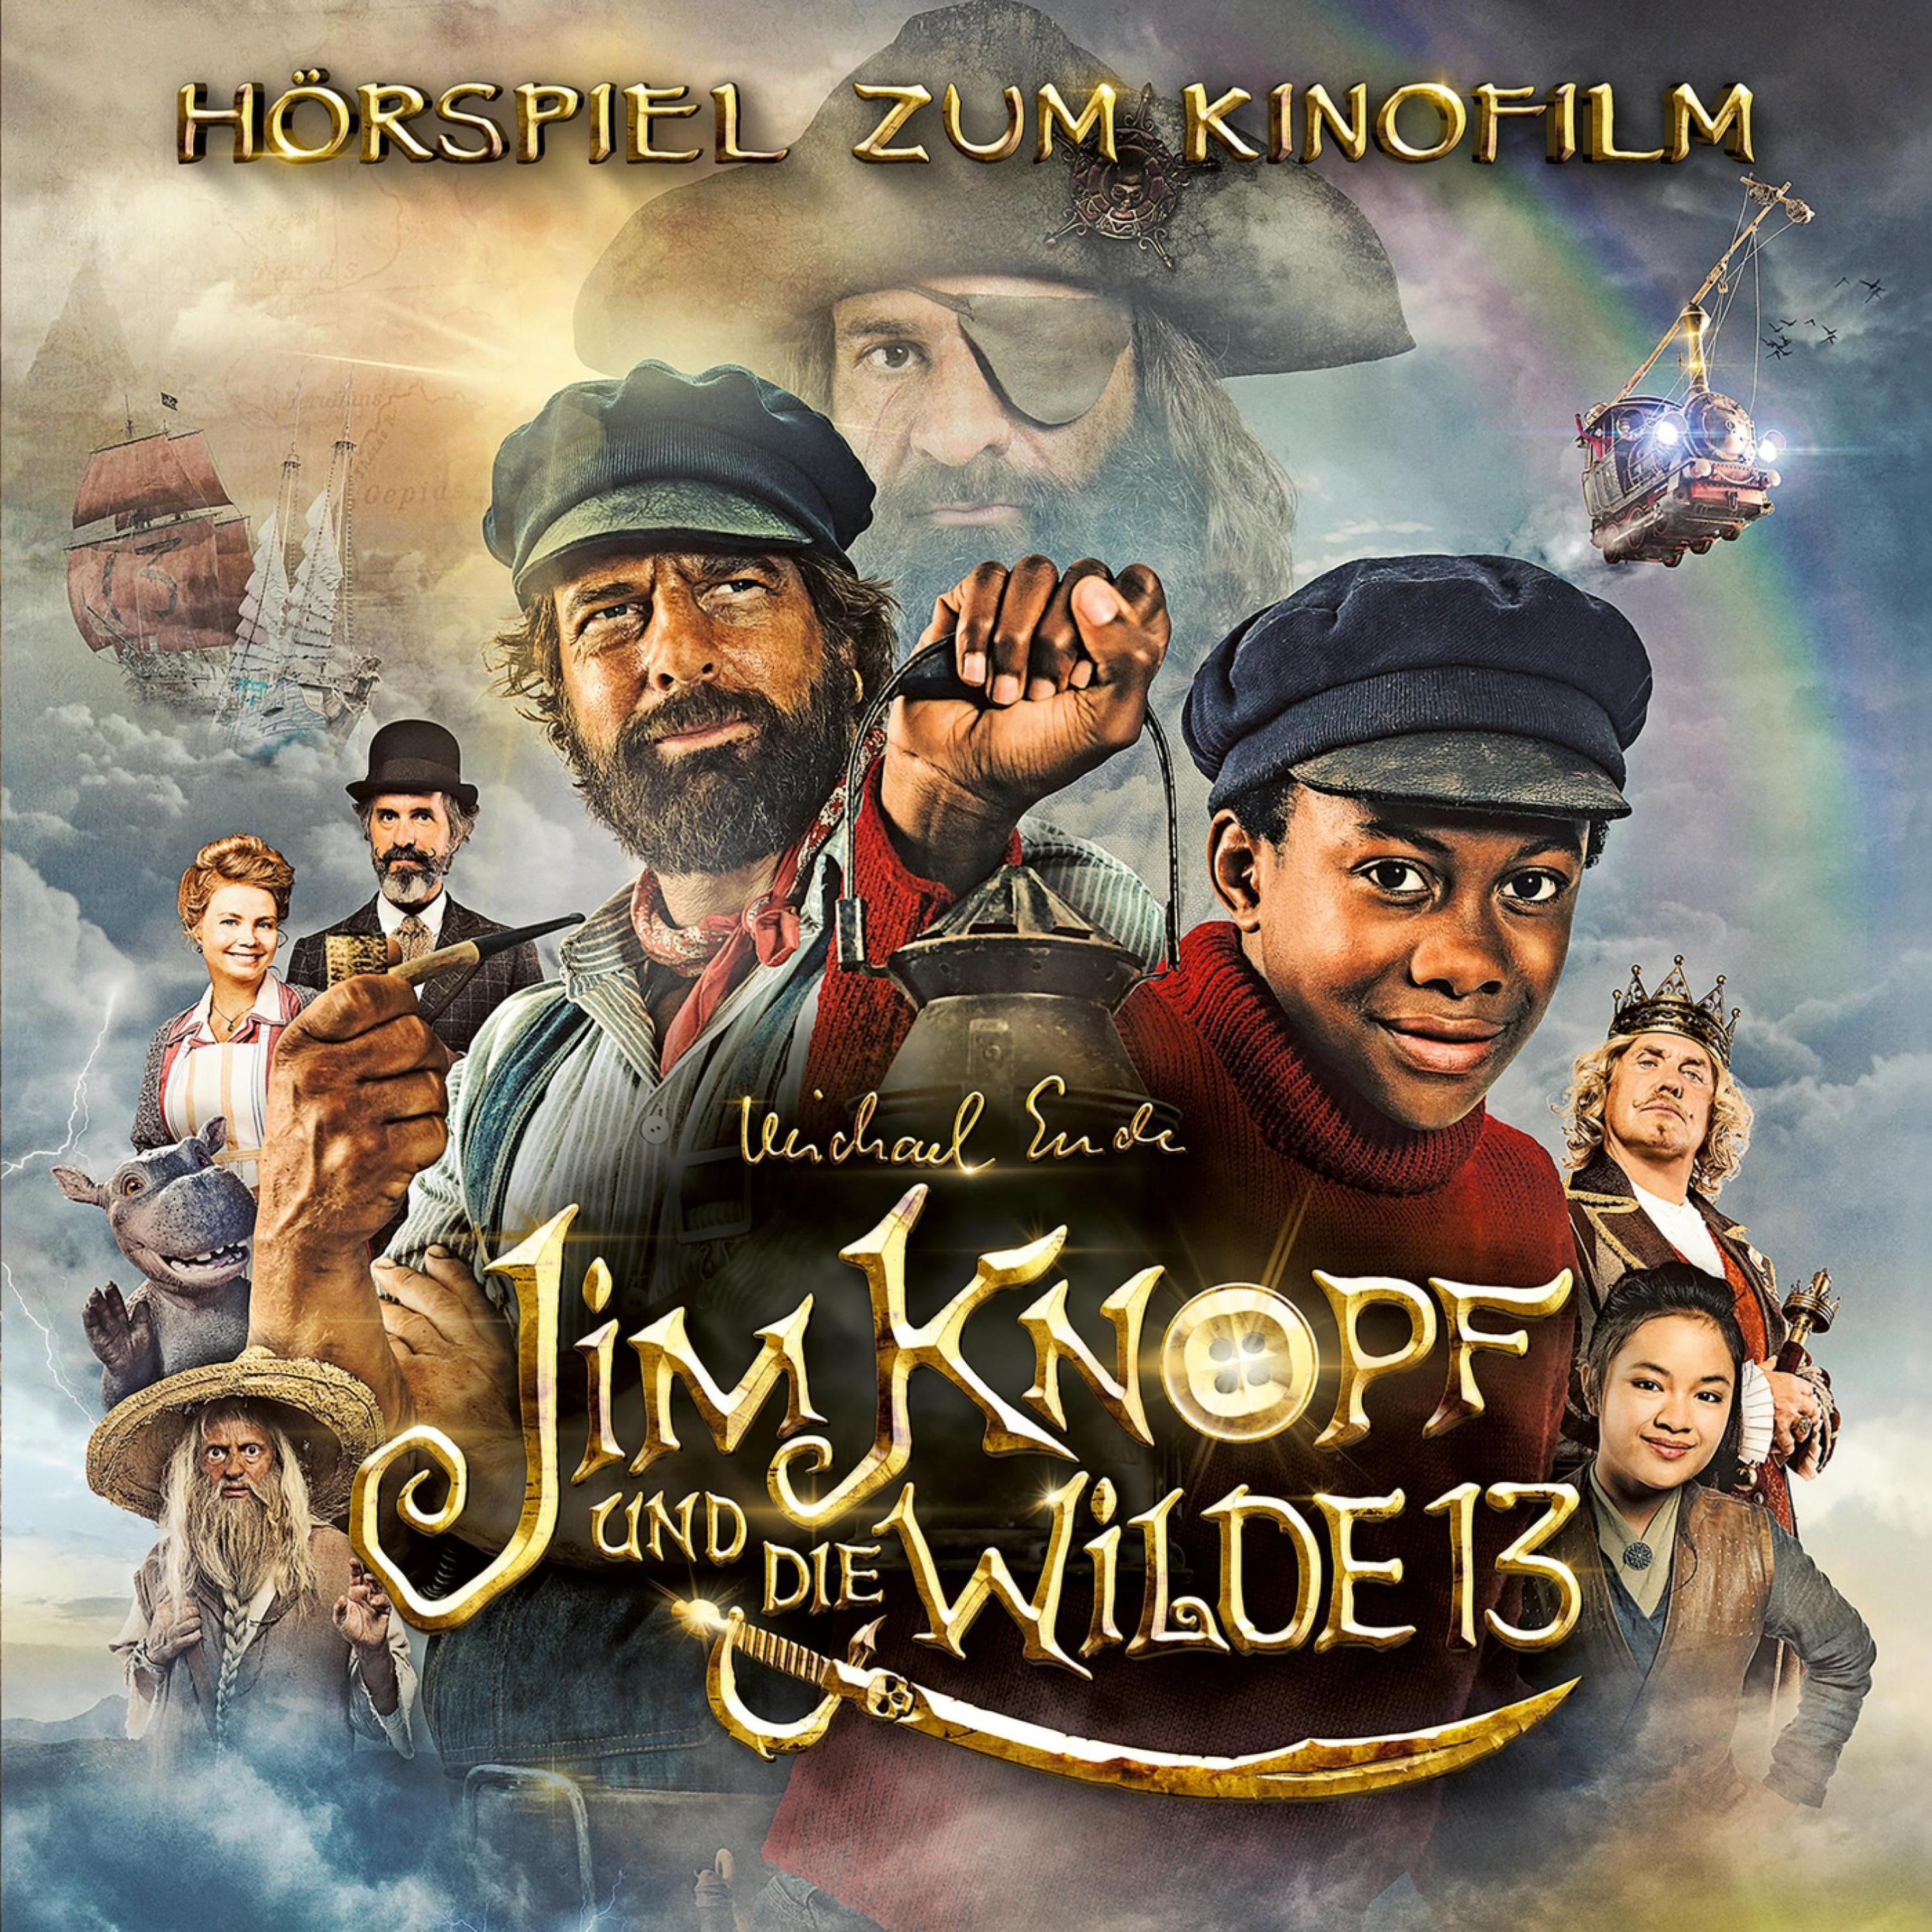 Jim Knopf Und Lukas Der Lokomotivfuhrer Jim Knopf Und Die Wilde 13 Horspiel Zum Kinofilm Horbuch Download